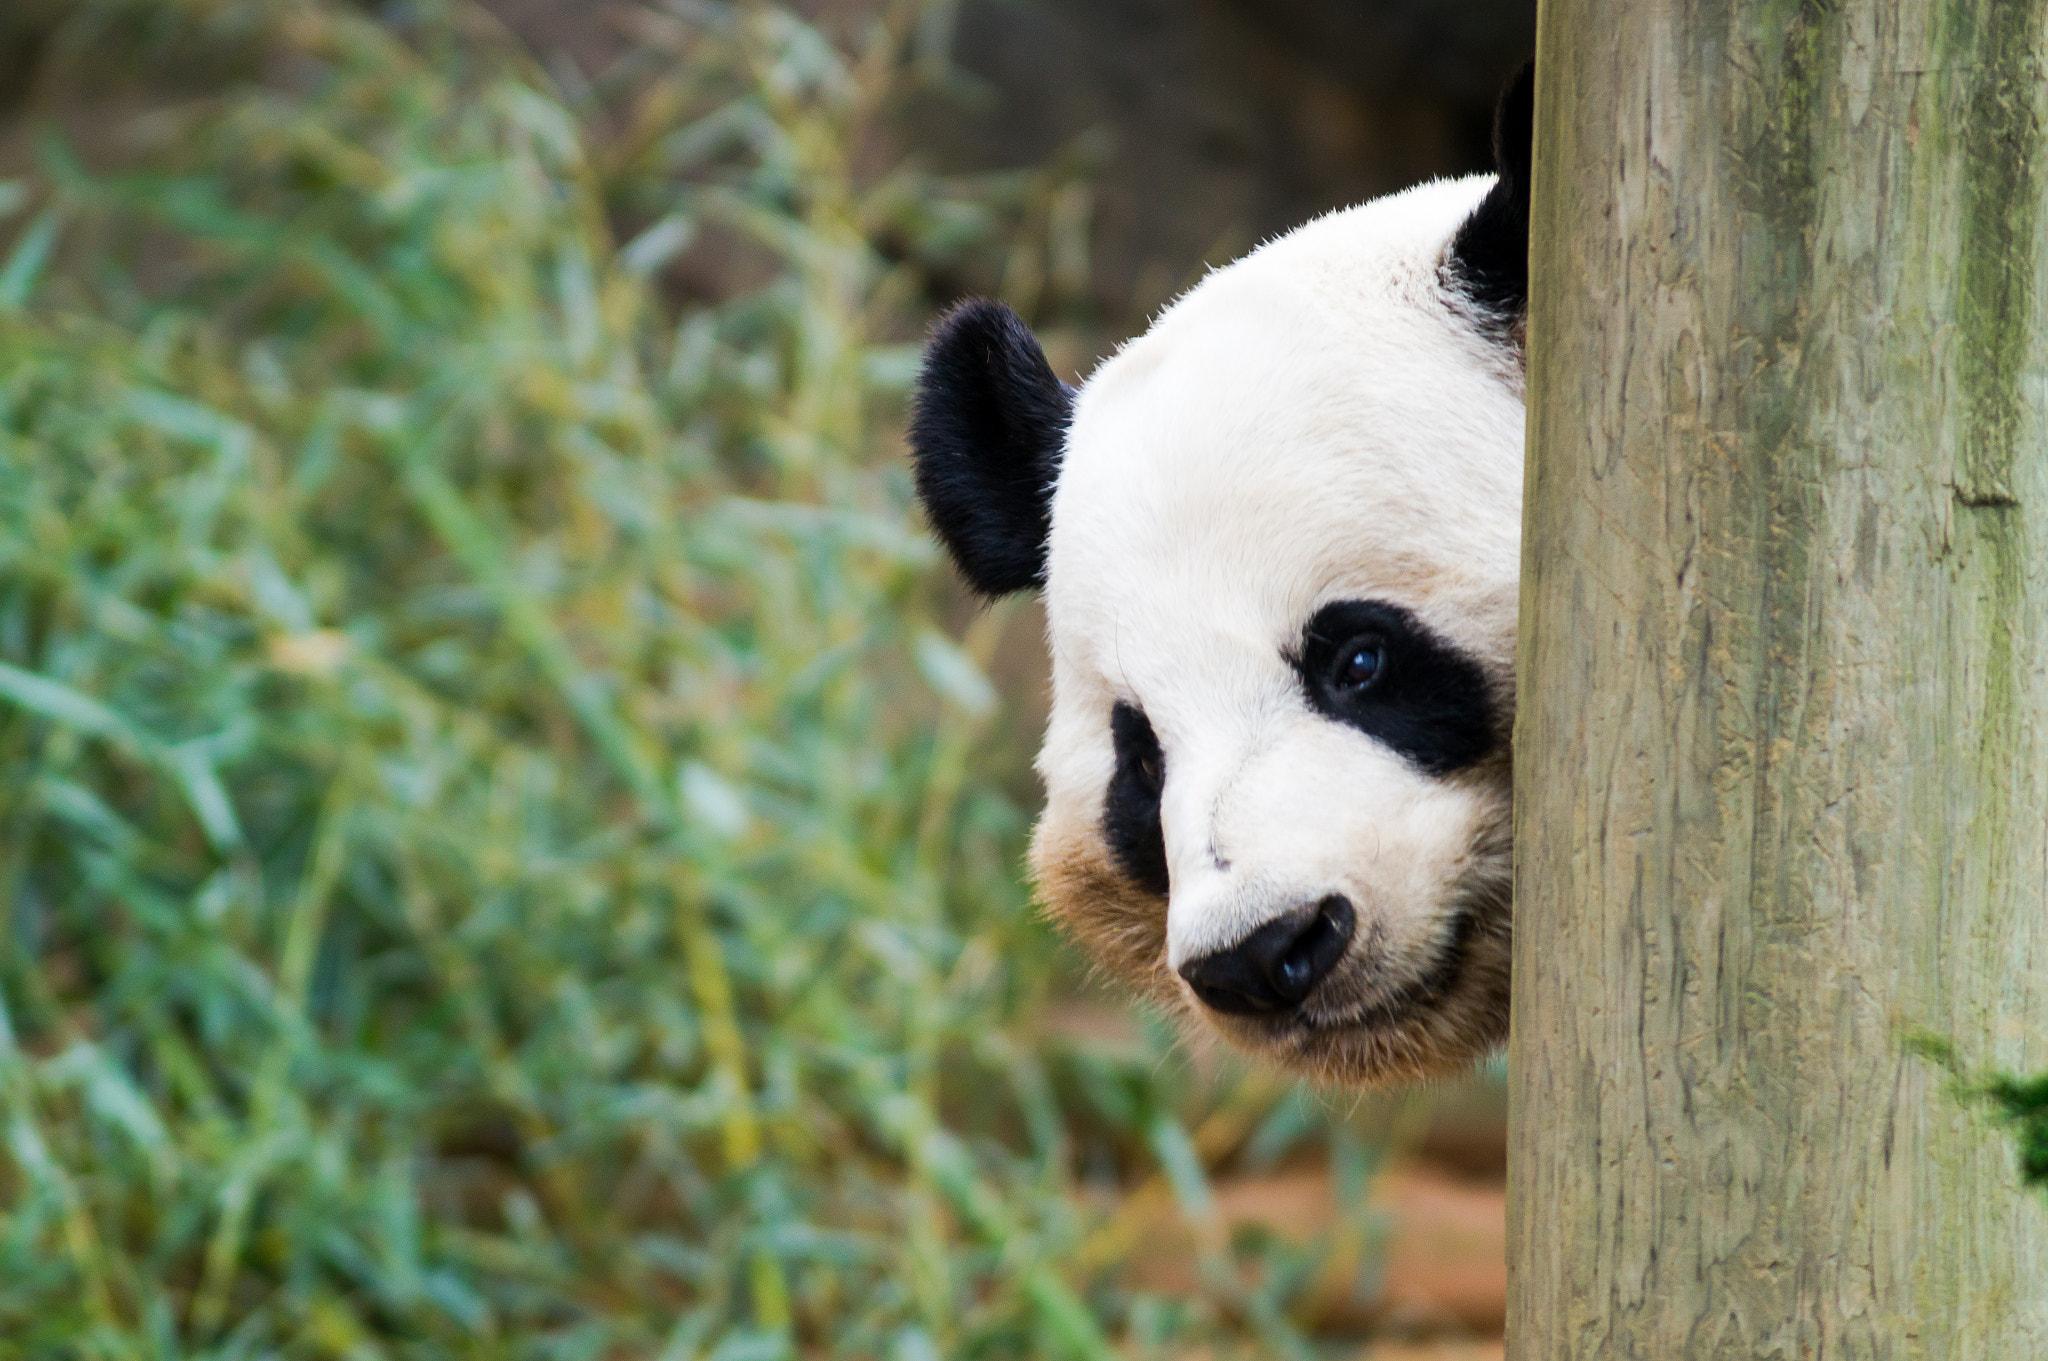 Sony SLT-A57 sample photo. Panda at the atlanta zoo (2) photography